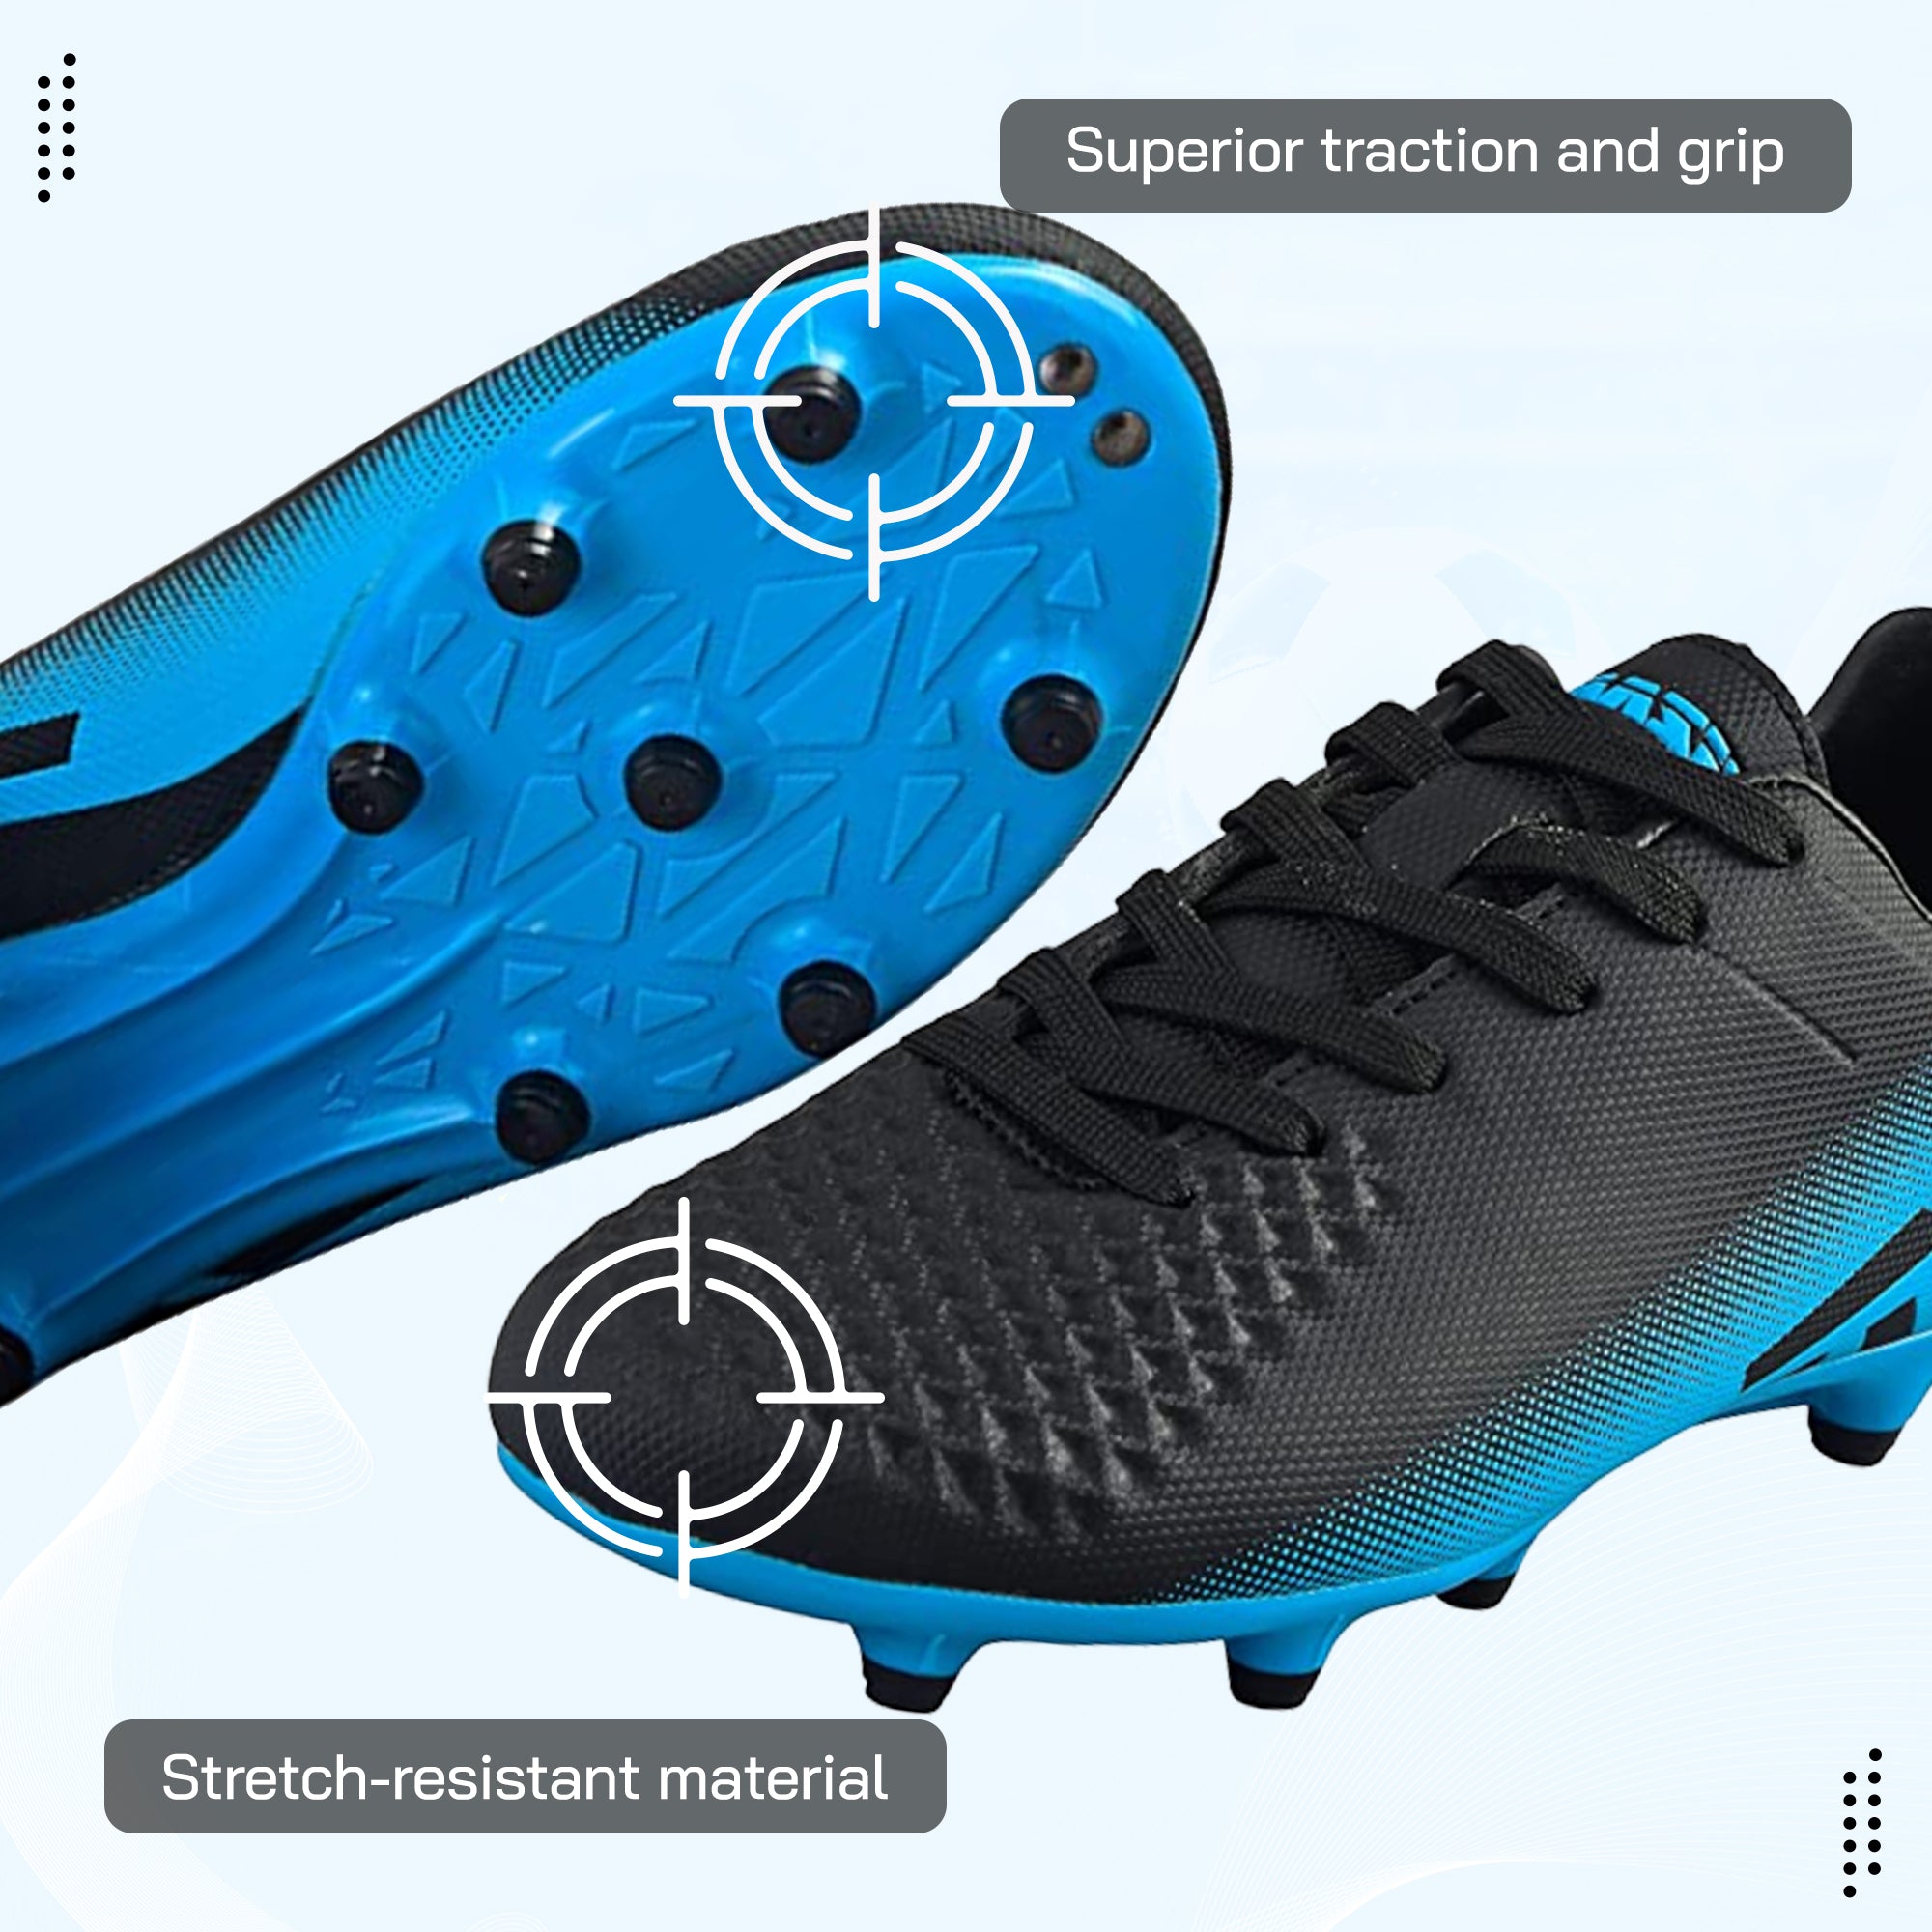 Santos Firm Ground Soccer Shoes - Black/Sky Blue